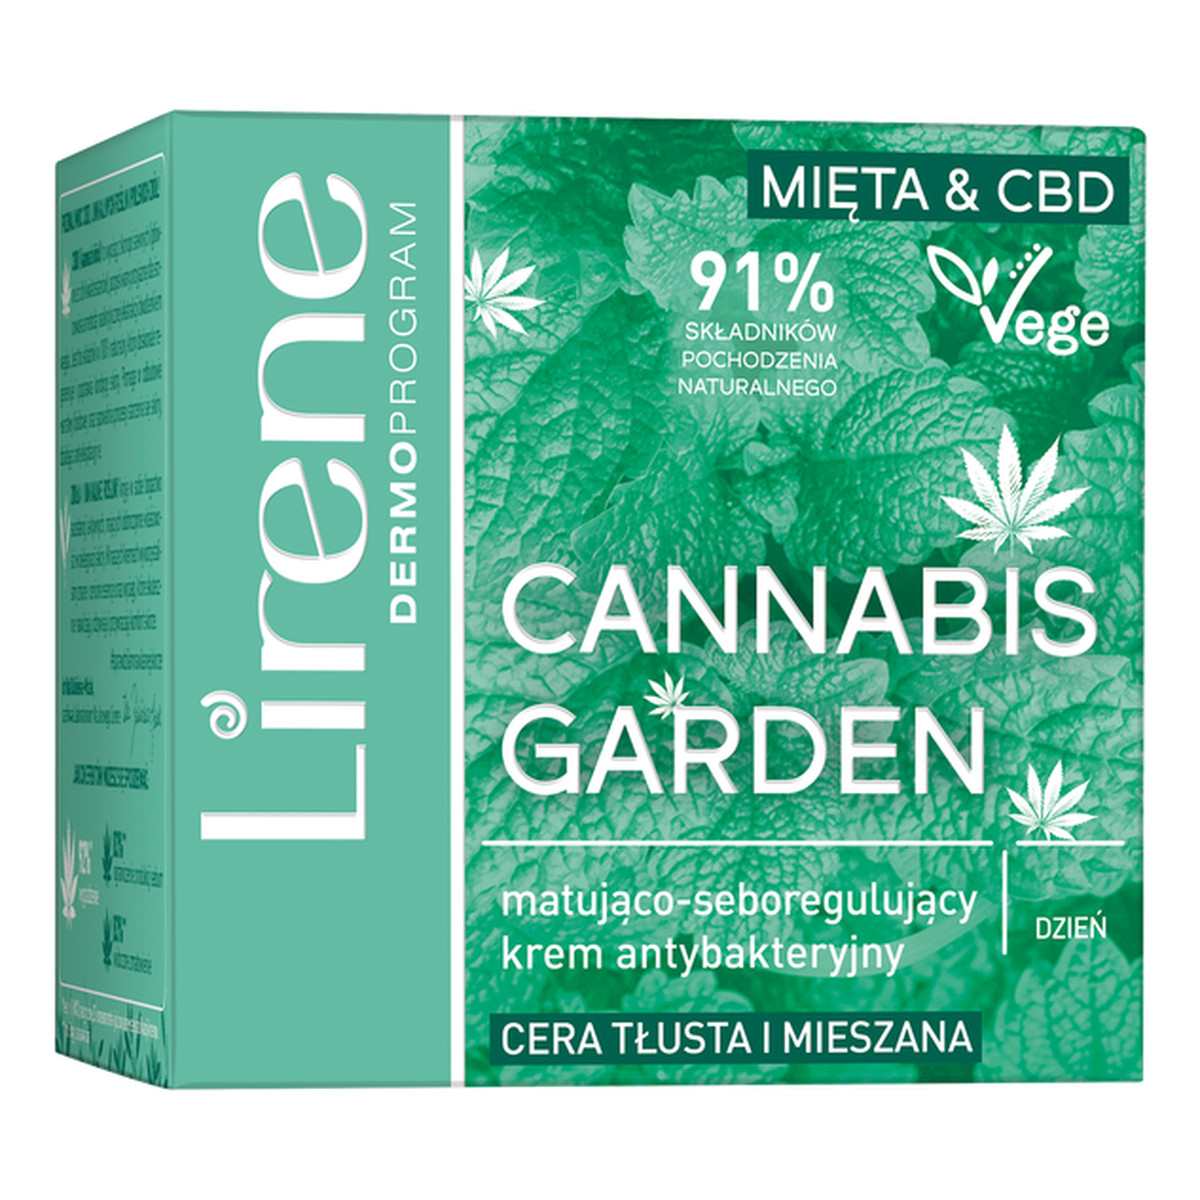 Lirene Cannabis Garden Krem Matująco-Saboregulujący 50ml